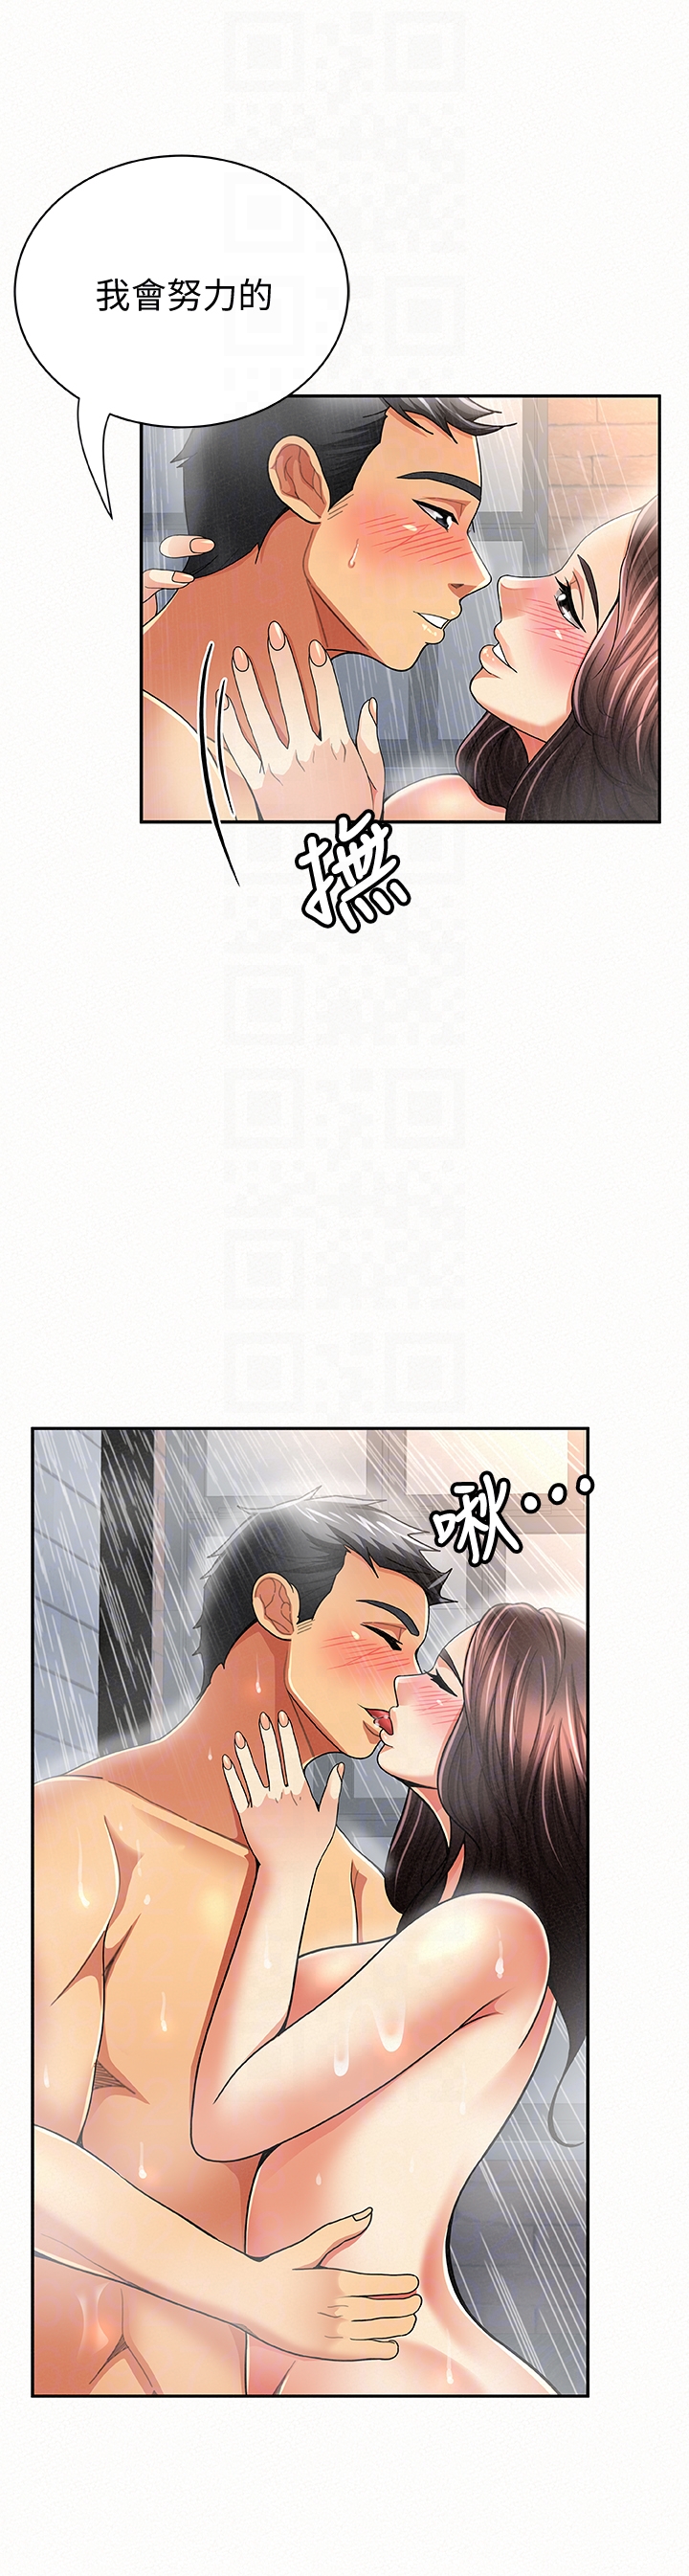 韩国污漫画 報告夫人 第33话-喜欢不同于老公的感觉 7